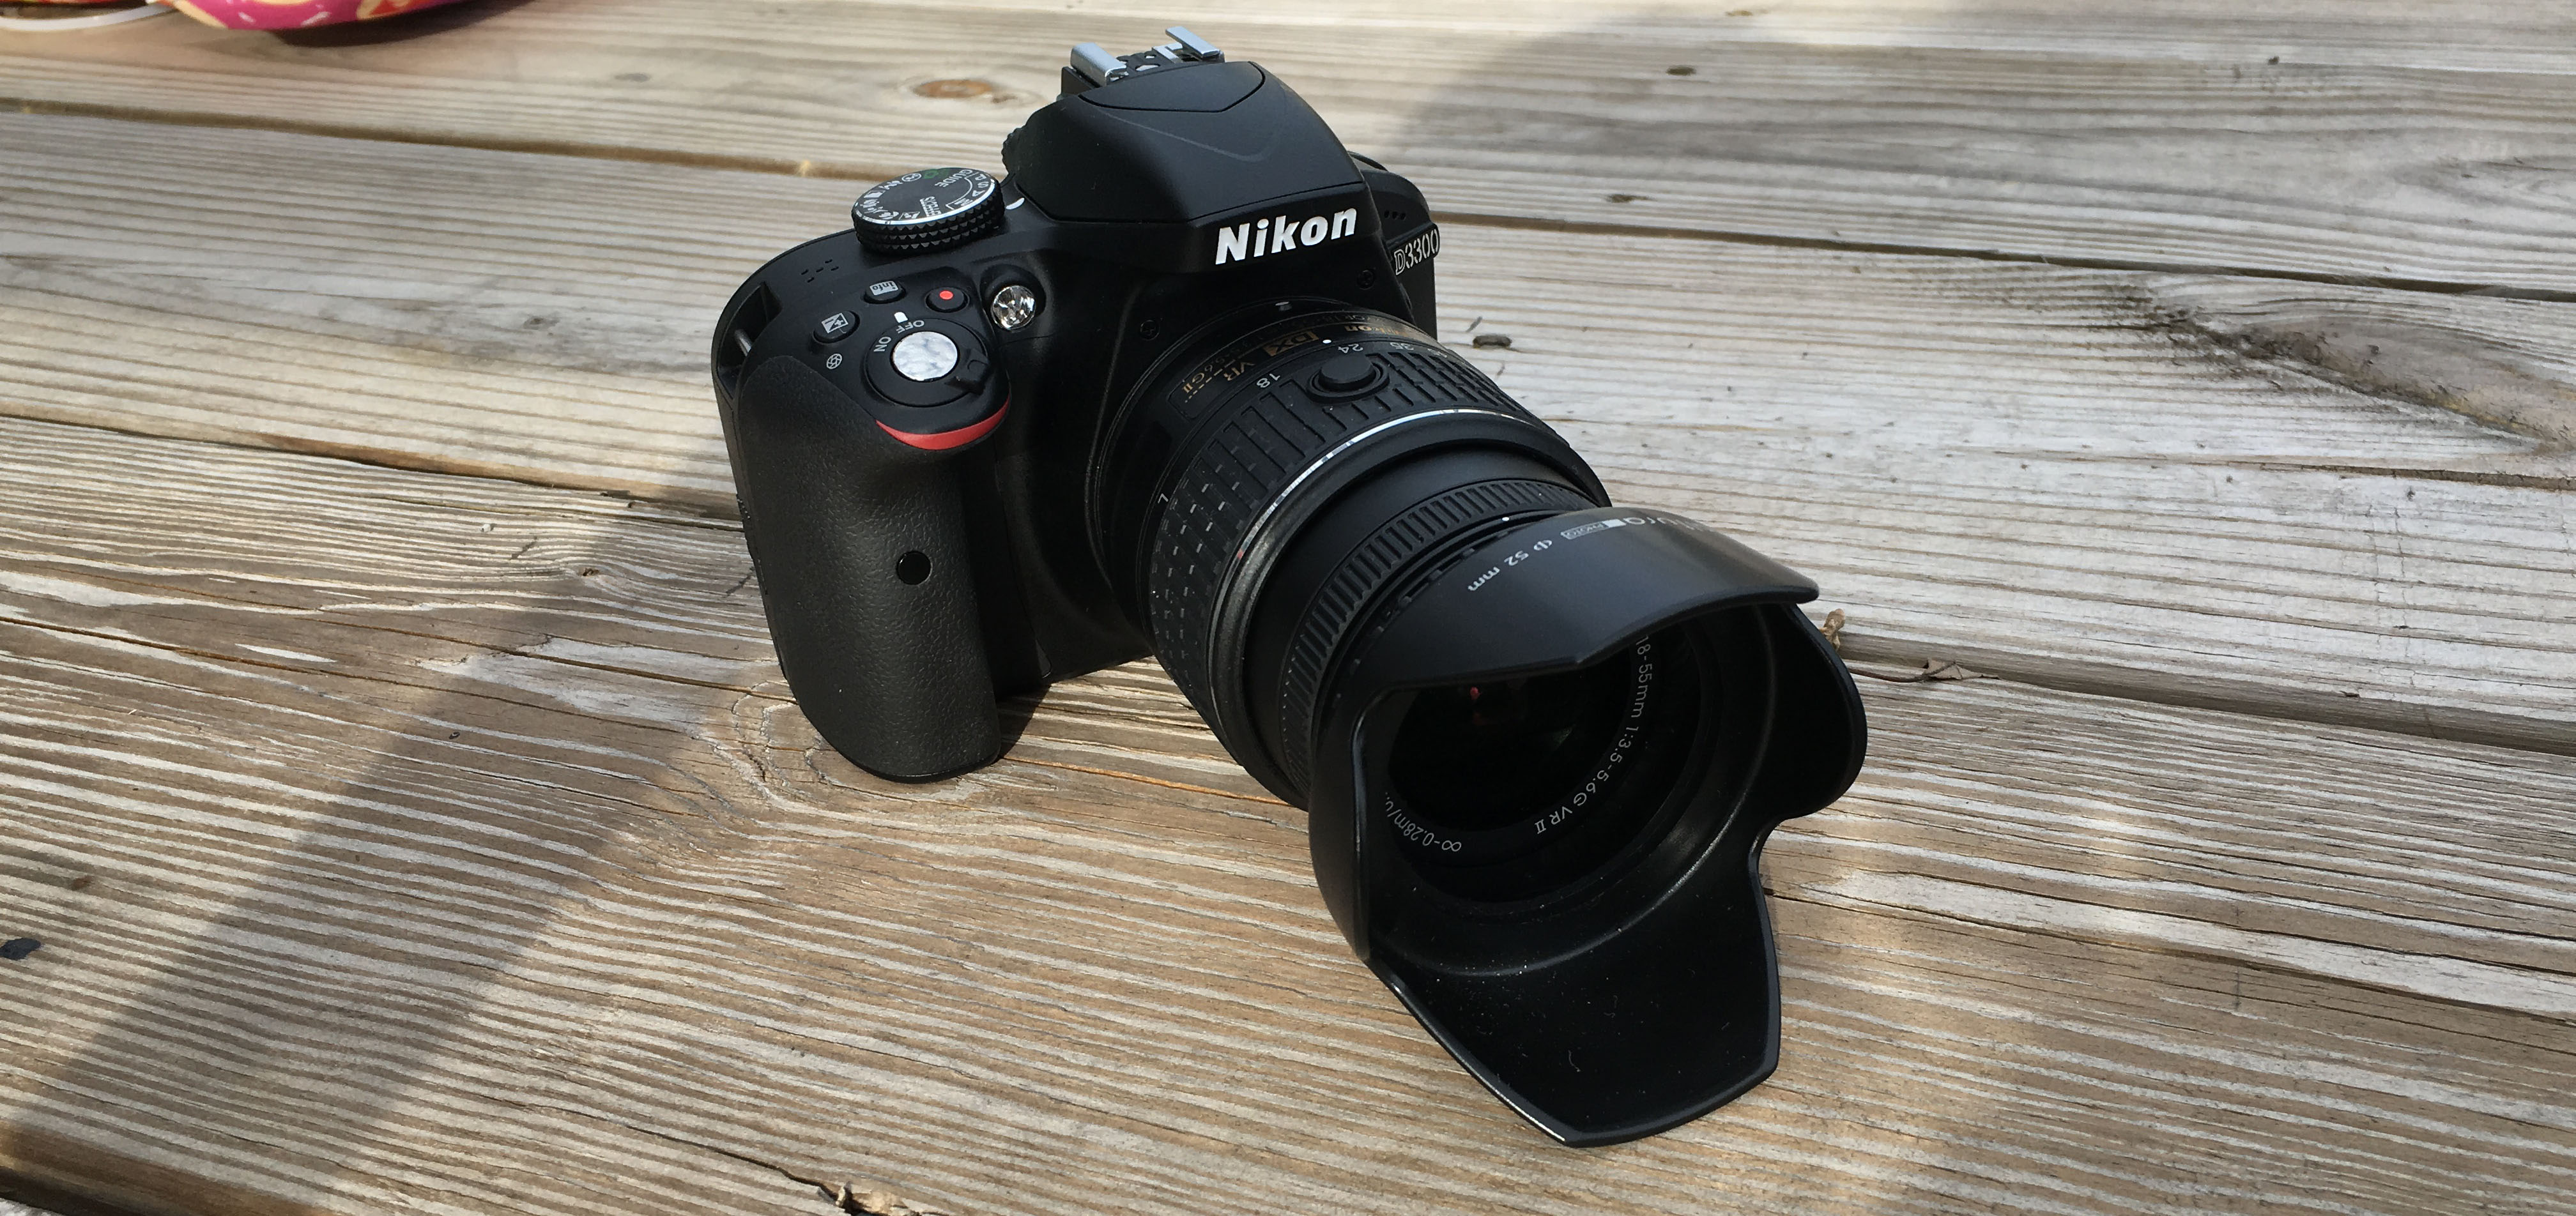 Nikon D3300 First Impressions